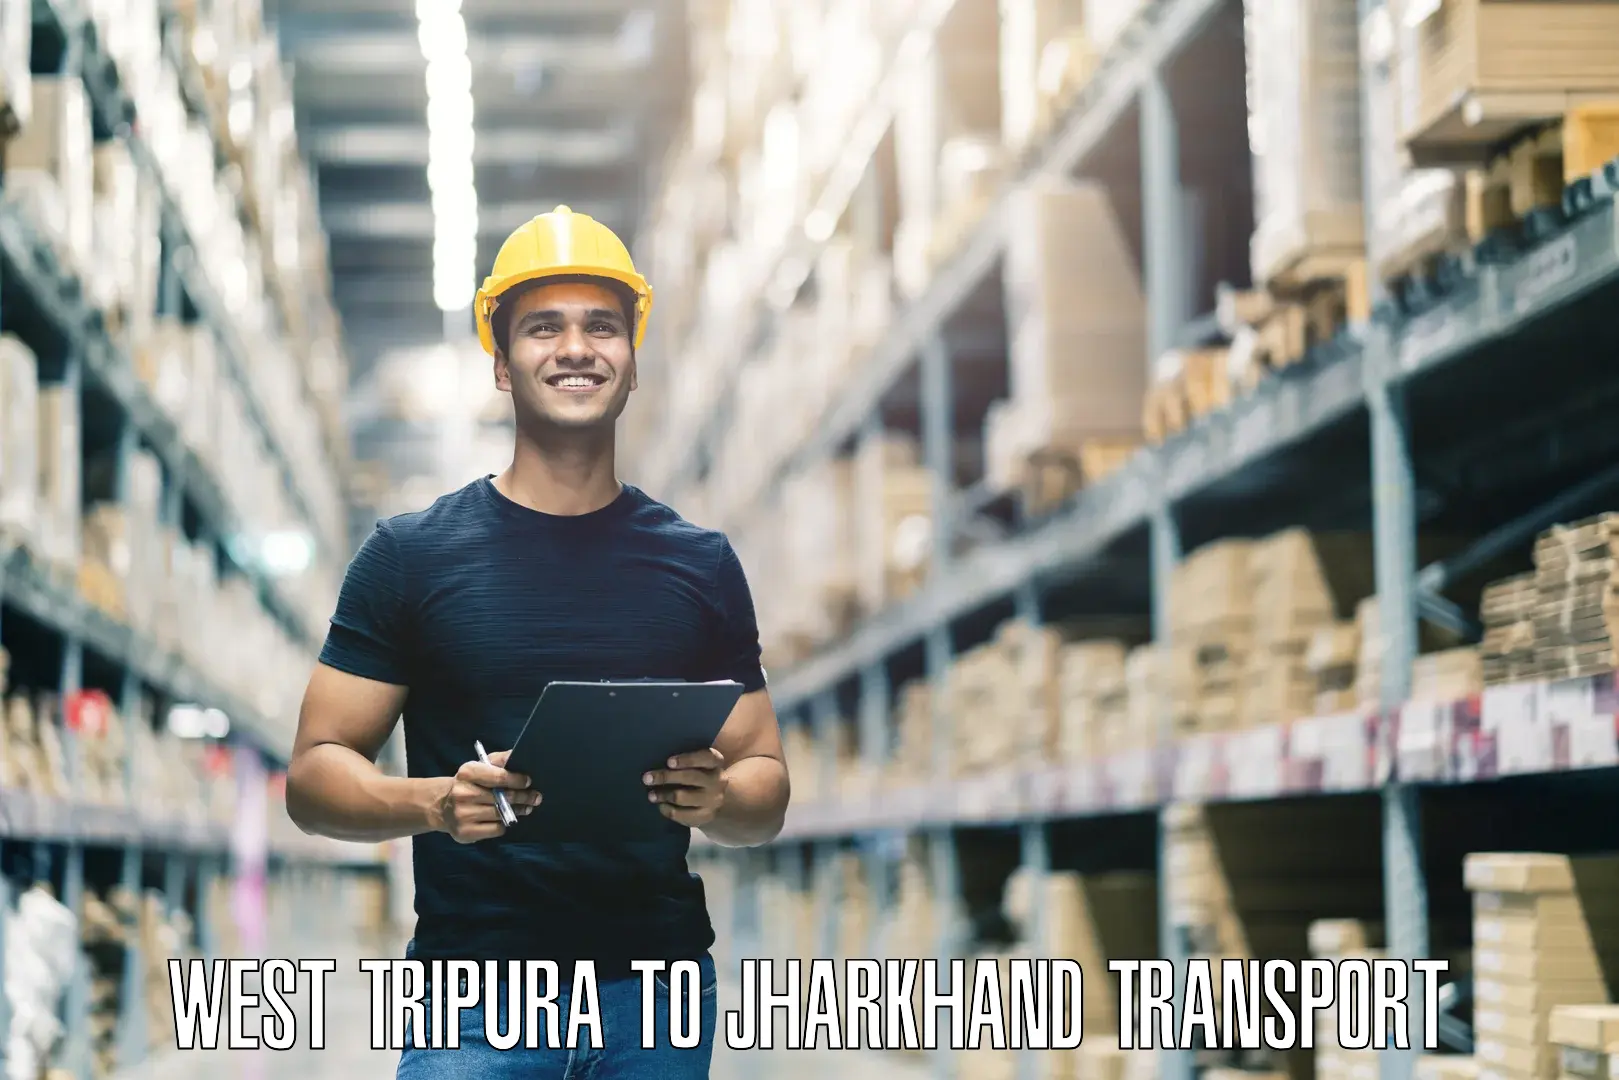 Cargo transport services West Tripura to Garhwa